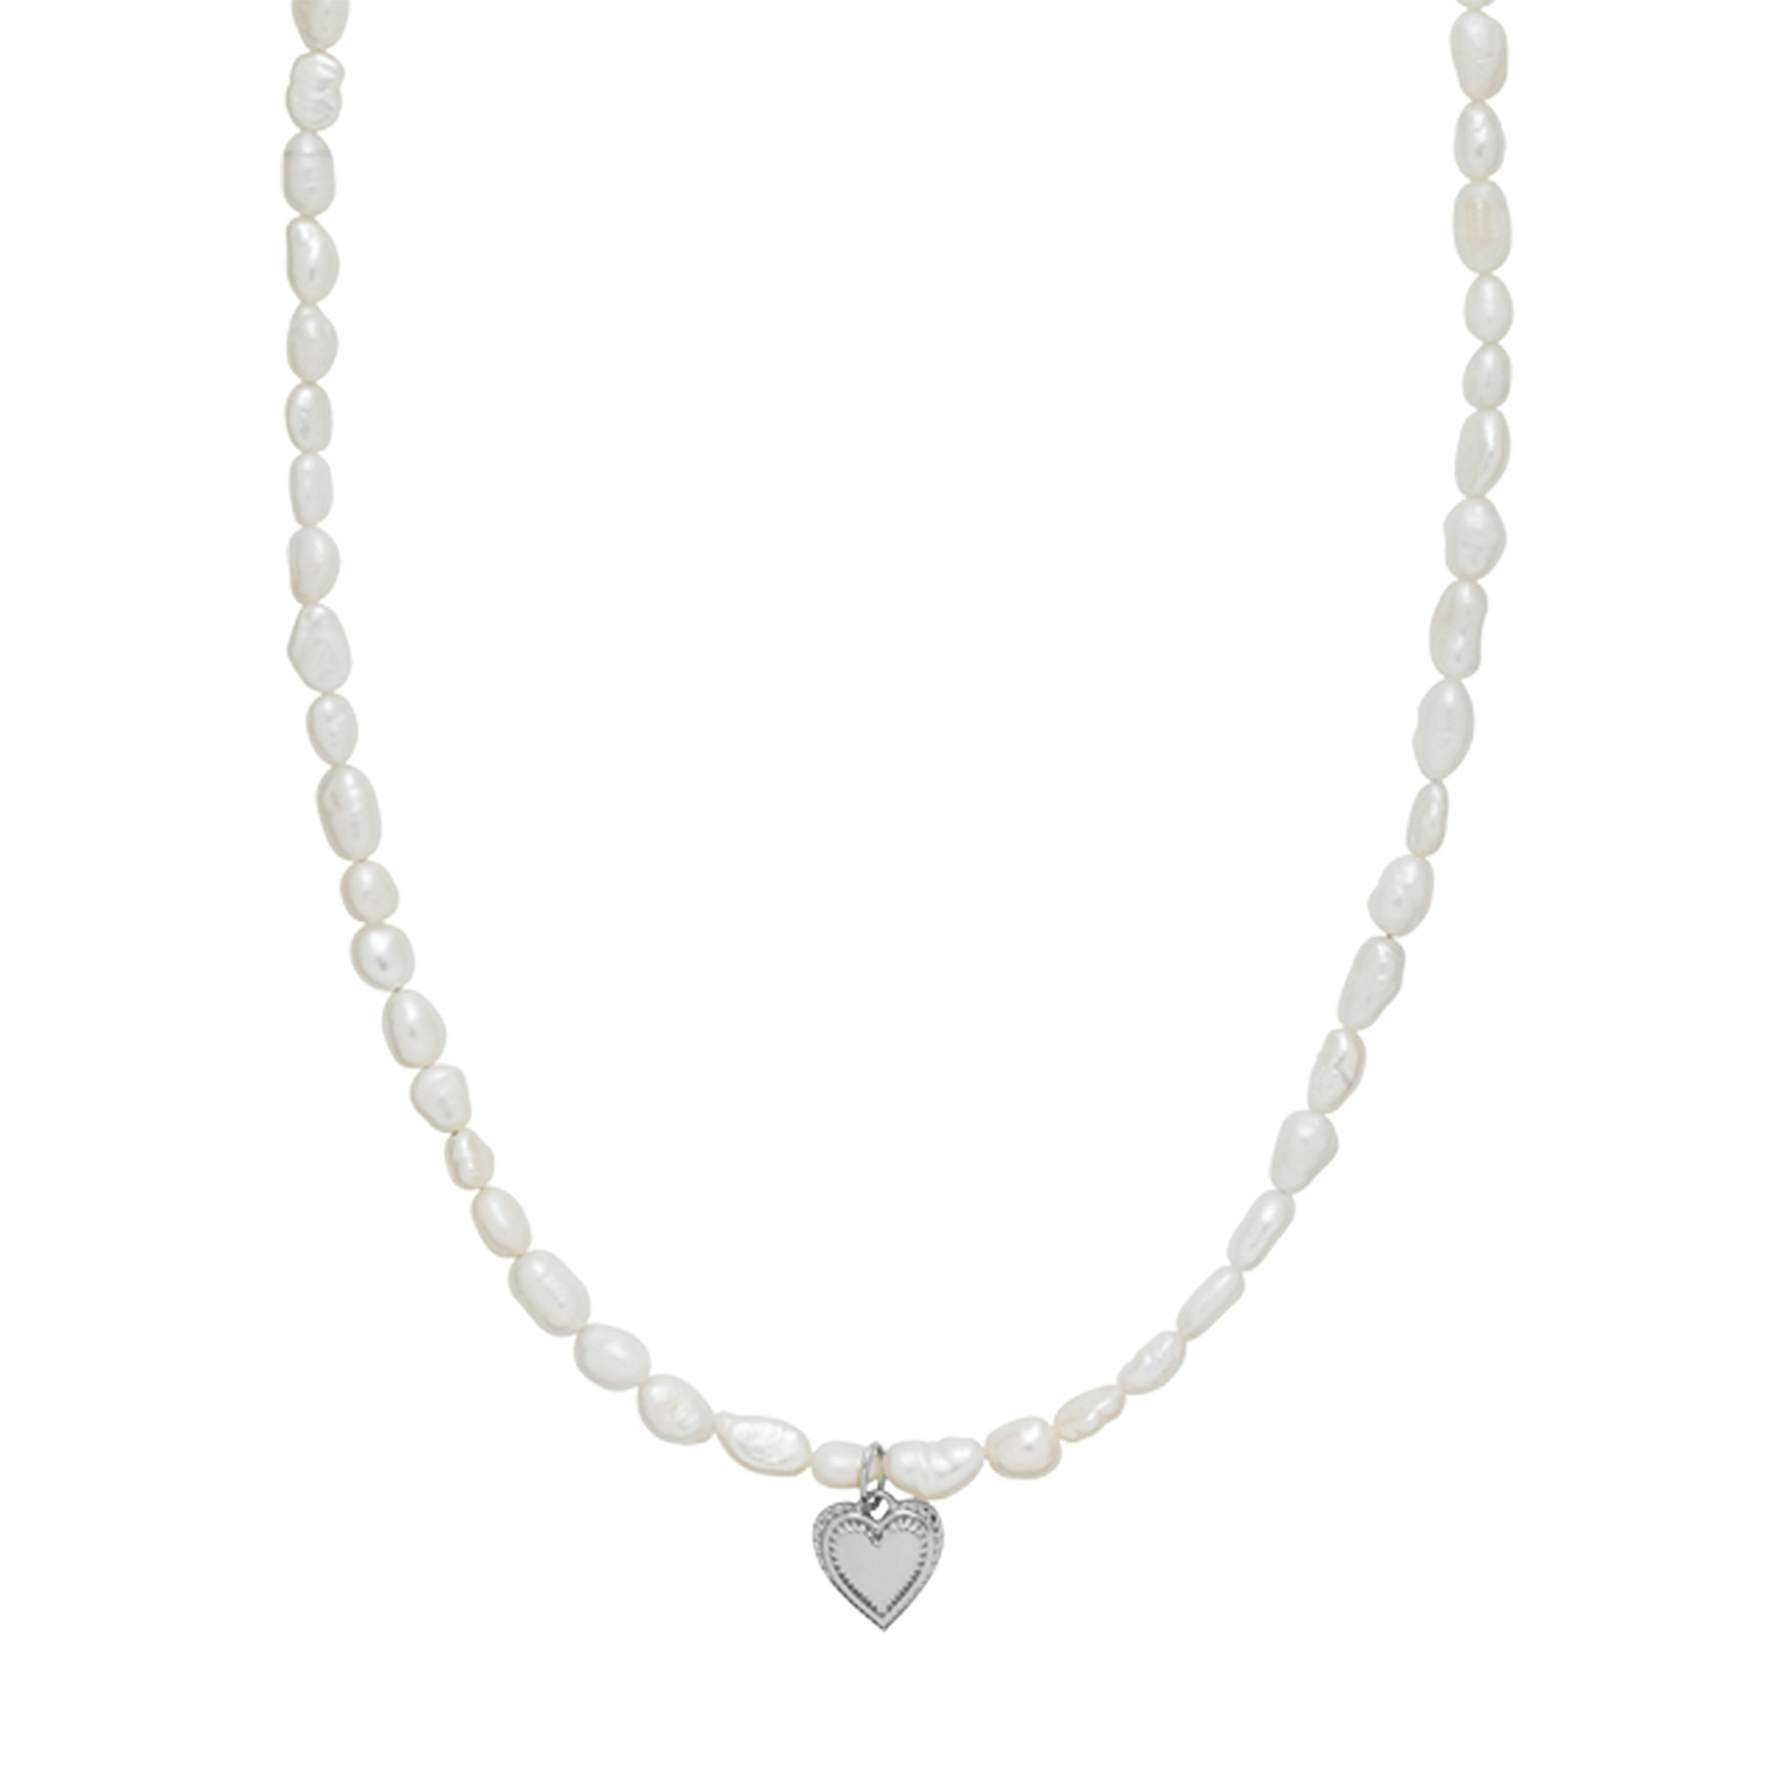 Anne-Sofie Krab x Sistie Heart Necklace fra Sistie i Sølv Sterling 925